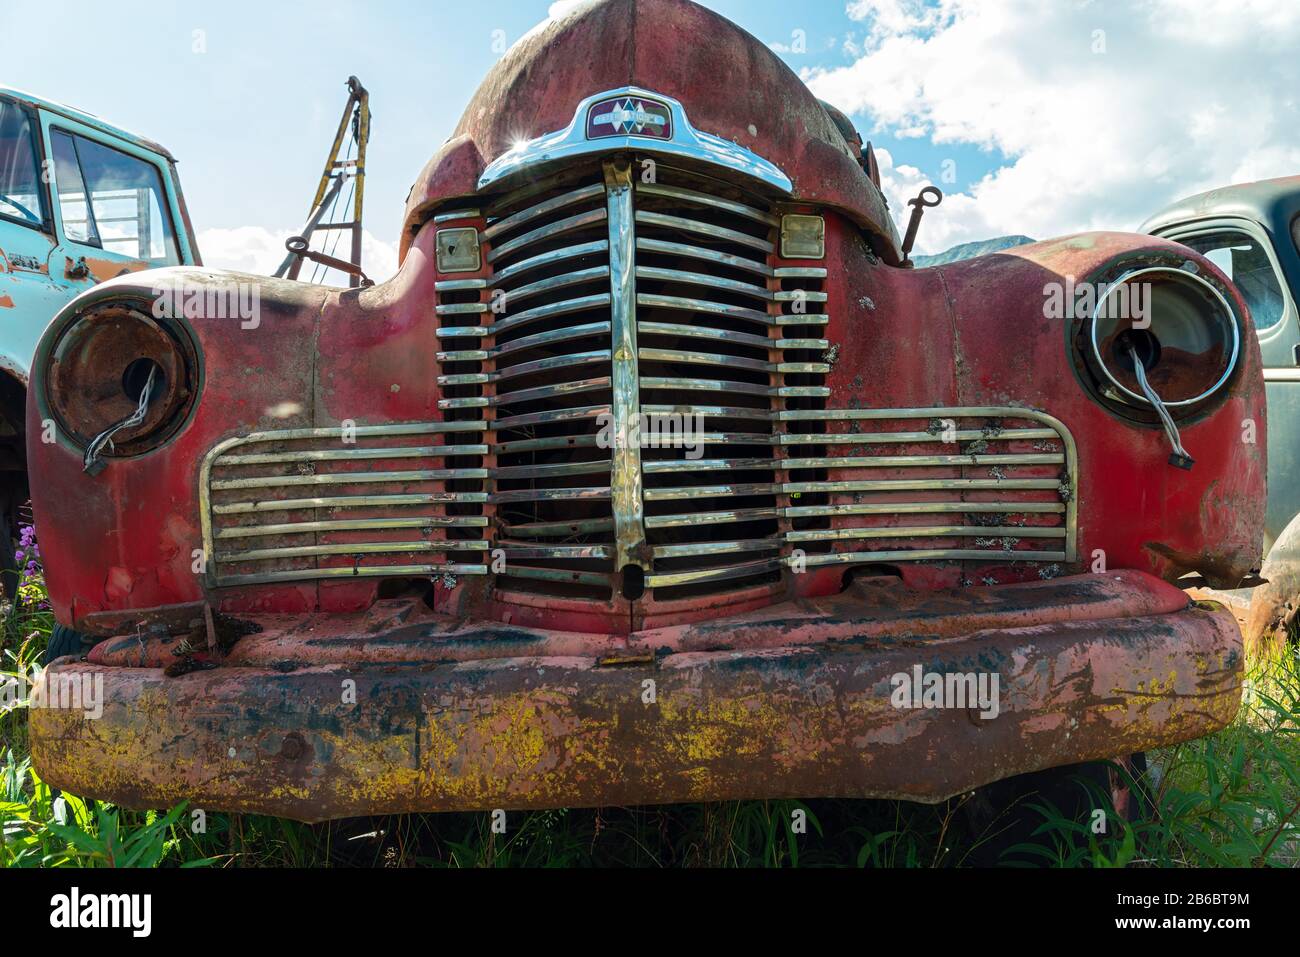 Cassiar, British Columbia, Canada - July 24, 2017: A rusty red International truck in a junkyard Stock Photo